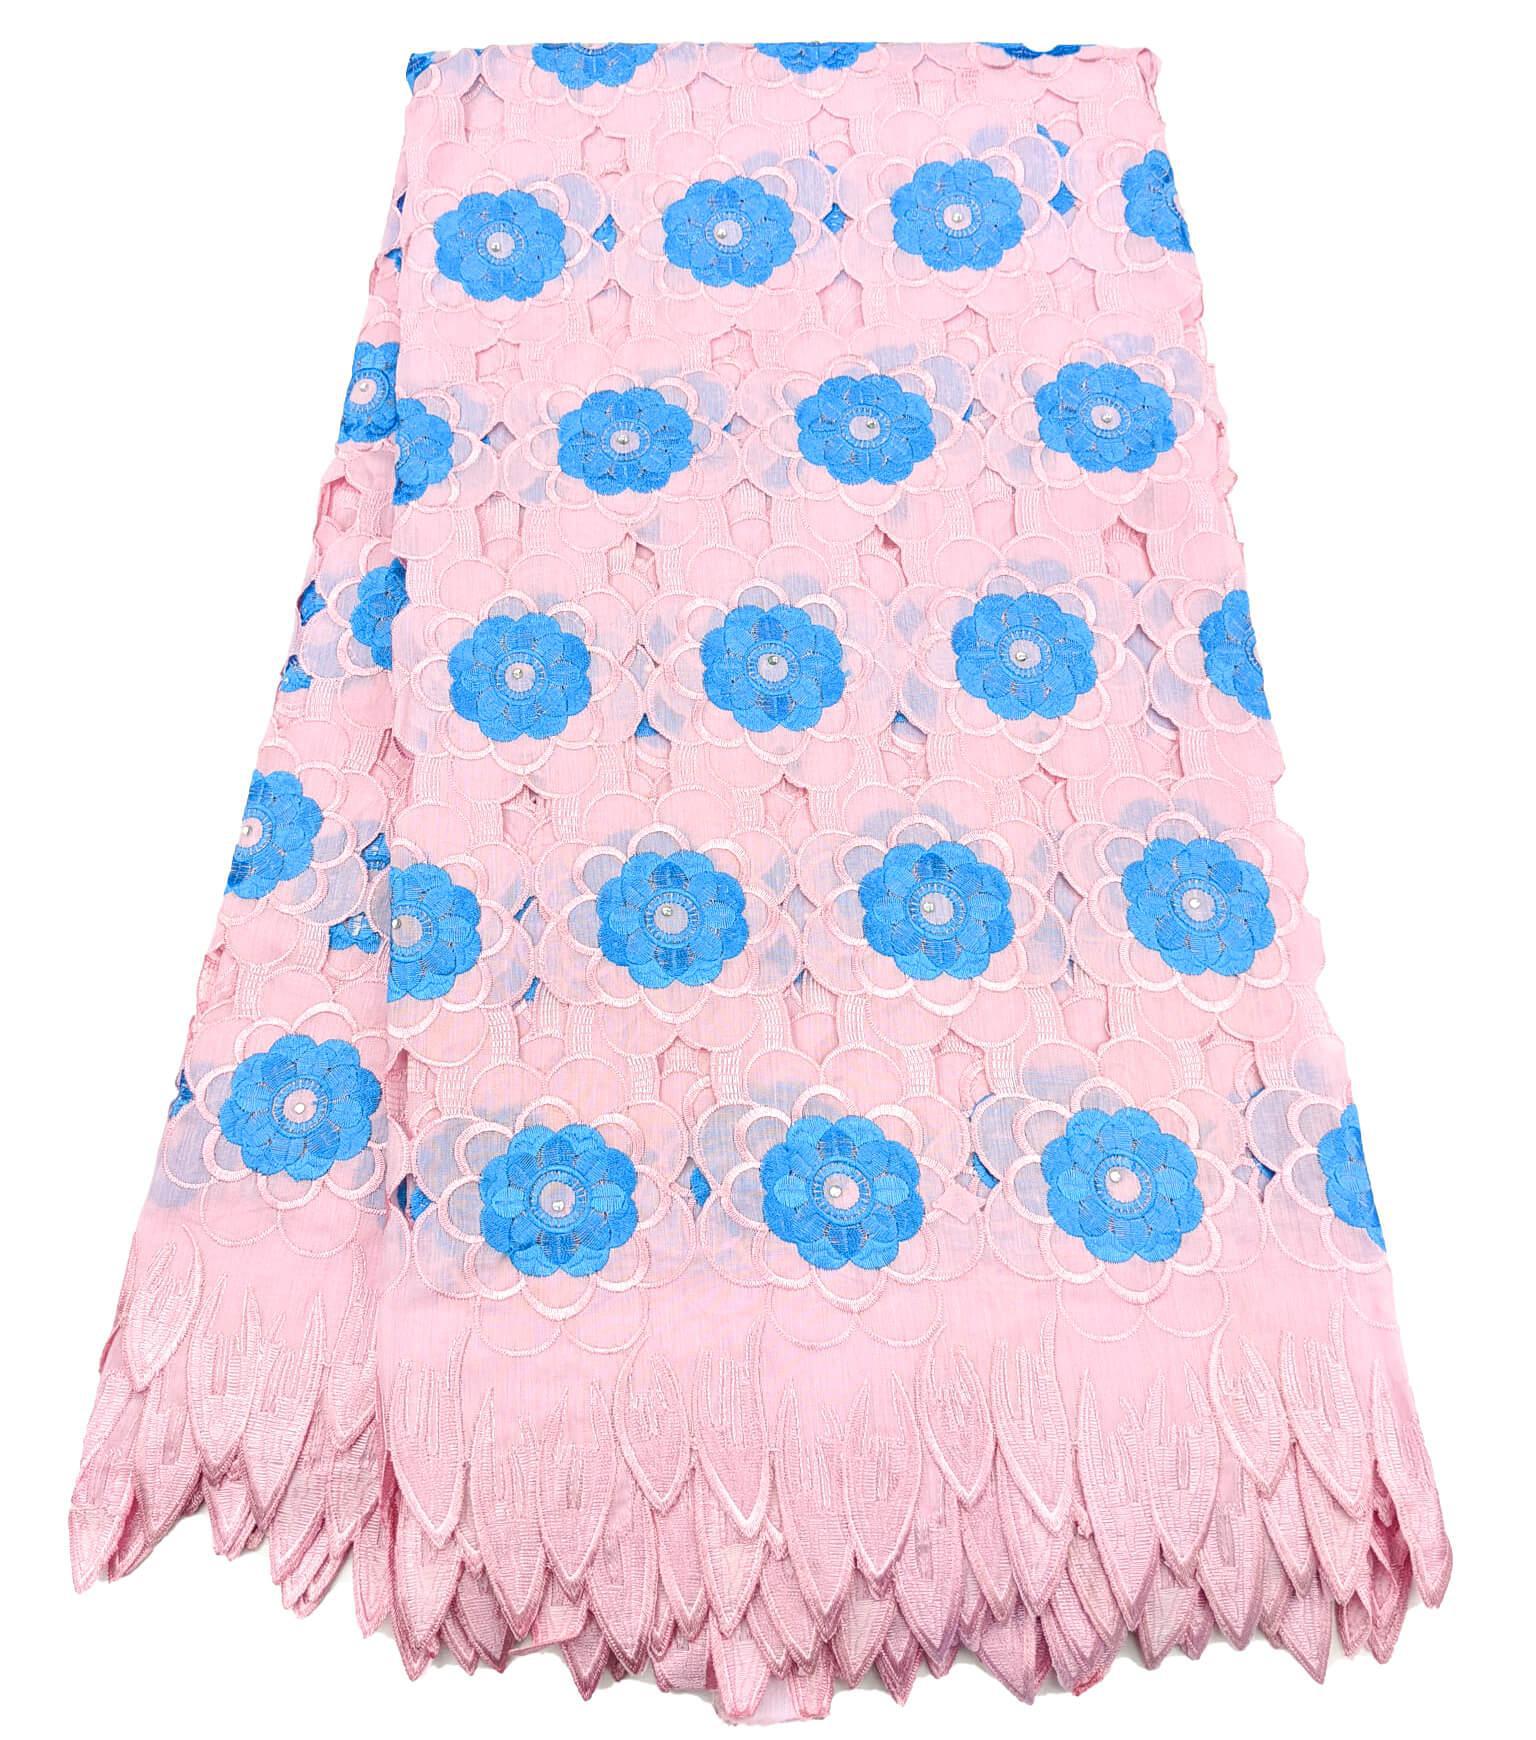 Pink & Blue Handcut Cotton Lace